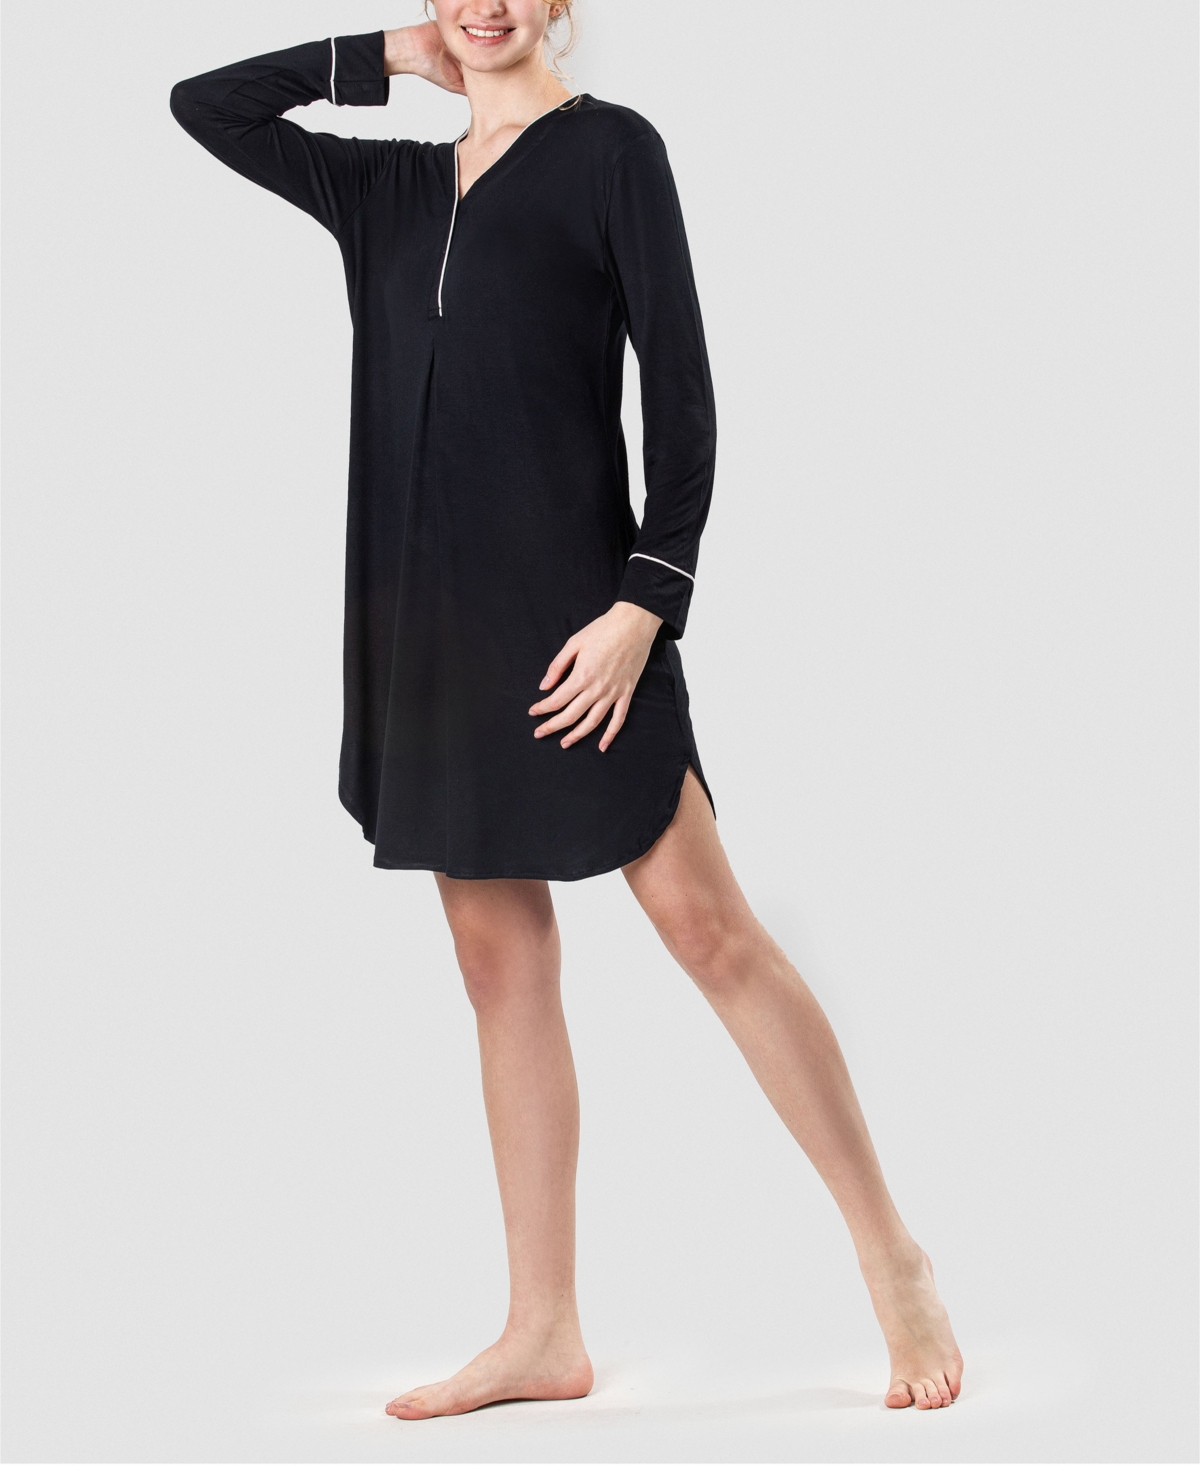 Women's Ultra Soft Cotton Sleepshirt Nightgown - Black